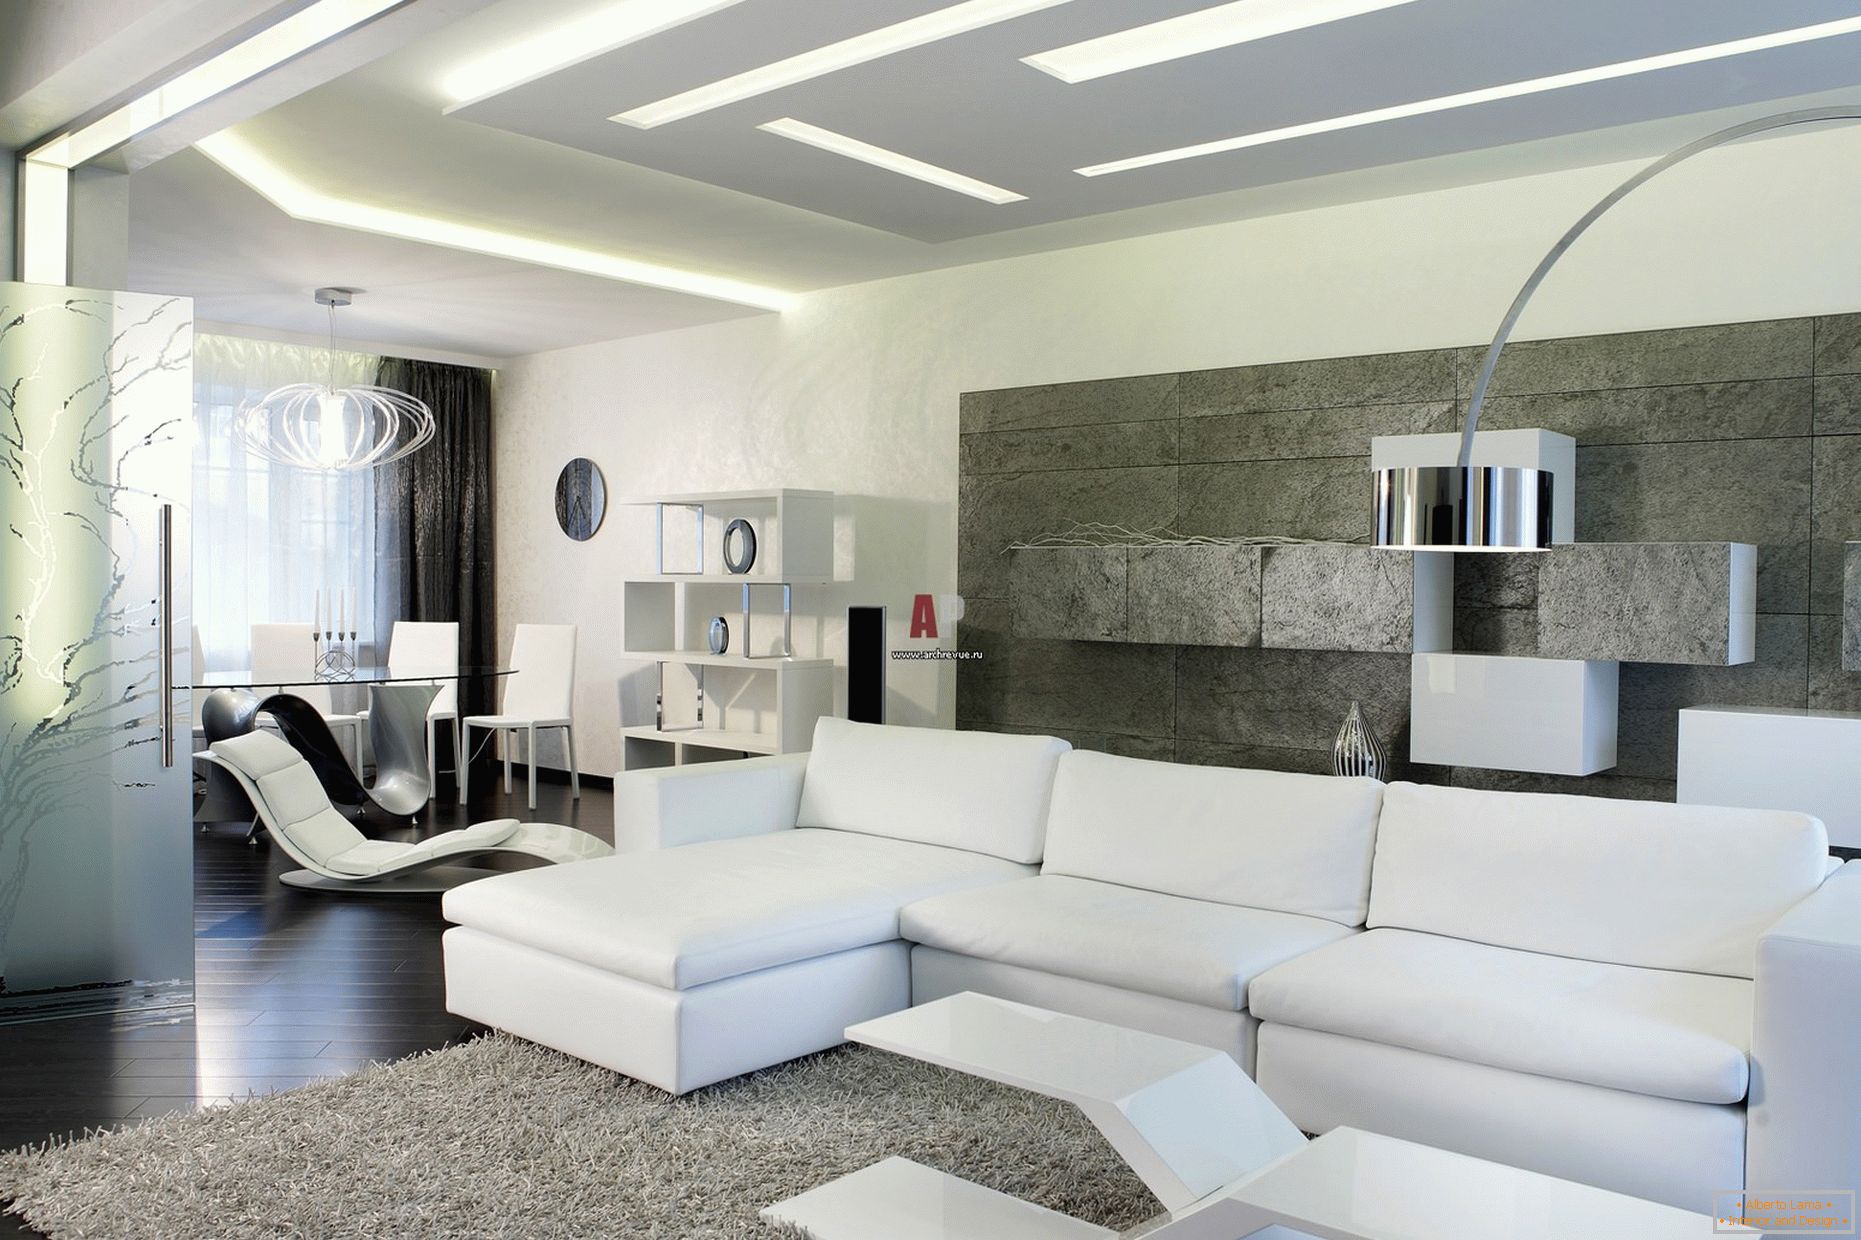 El interior blanco de los huéspedes de la habitación en un estilo minimalista es notable por un diseño moderno y audaz con toques de alta tecnología.